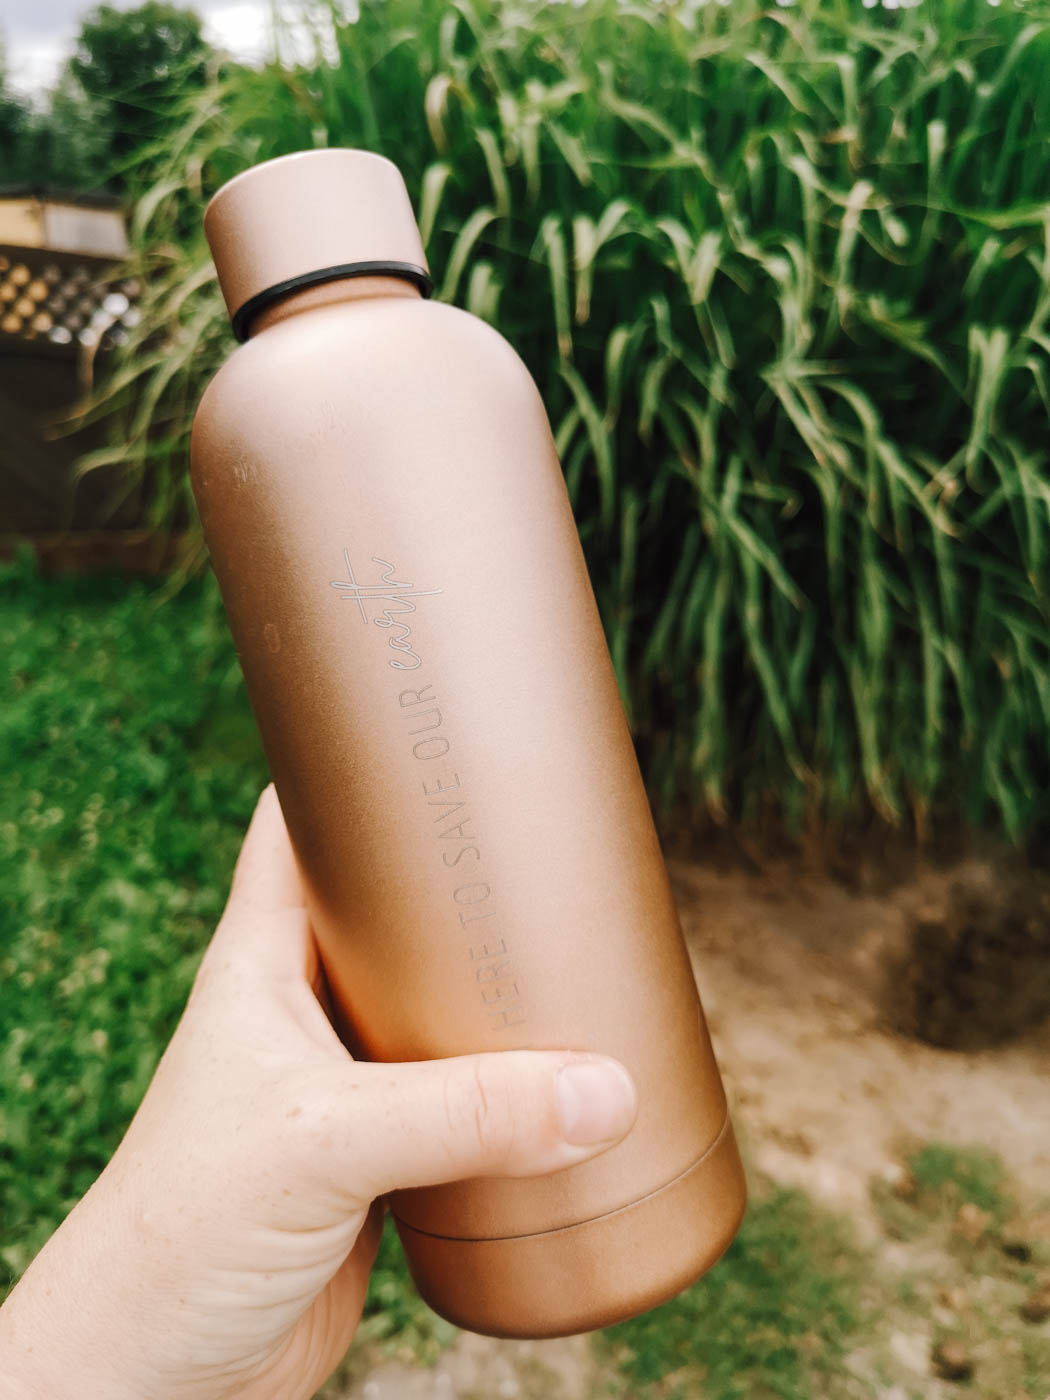 Stay hydrated! Thermosflasche aus Edelstahl für deinen nachhaltigen Lifestyle. 500 ml Volumen, extrem stabil, hält bis zu 8 Stunden warm/kalt, plastikfrei verpackt. Müll vermeiden & mit dem nachhaltigen Lifestyle Spaß haben.